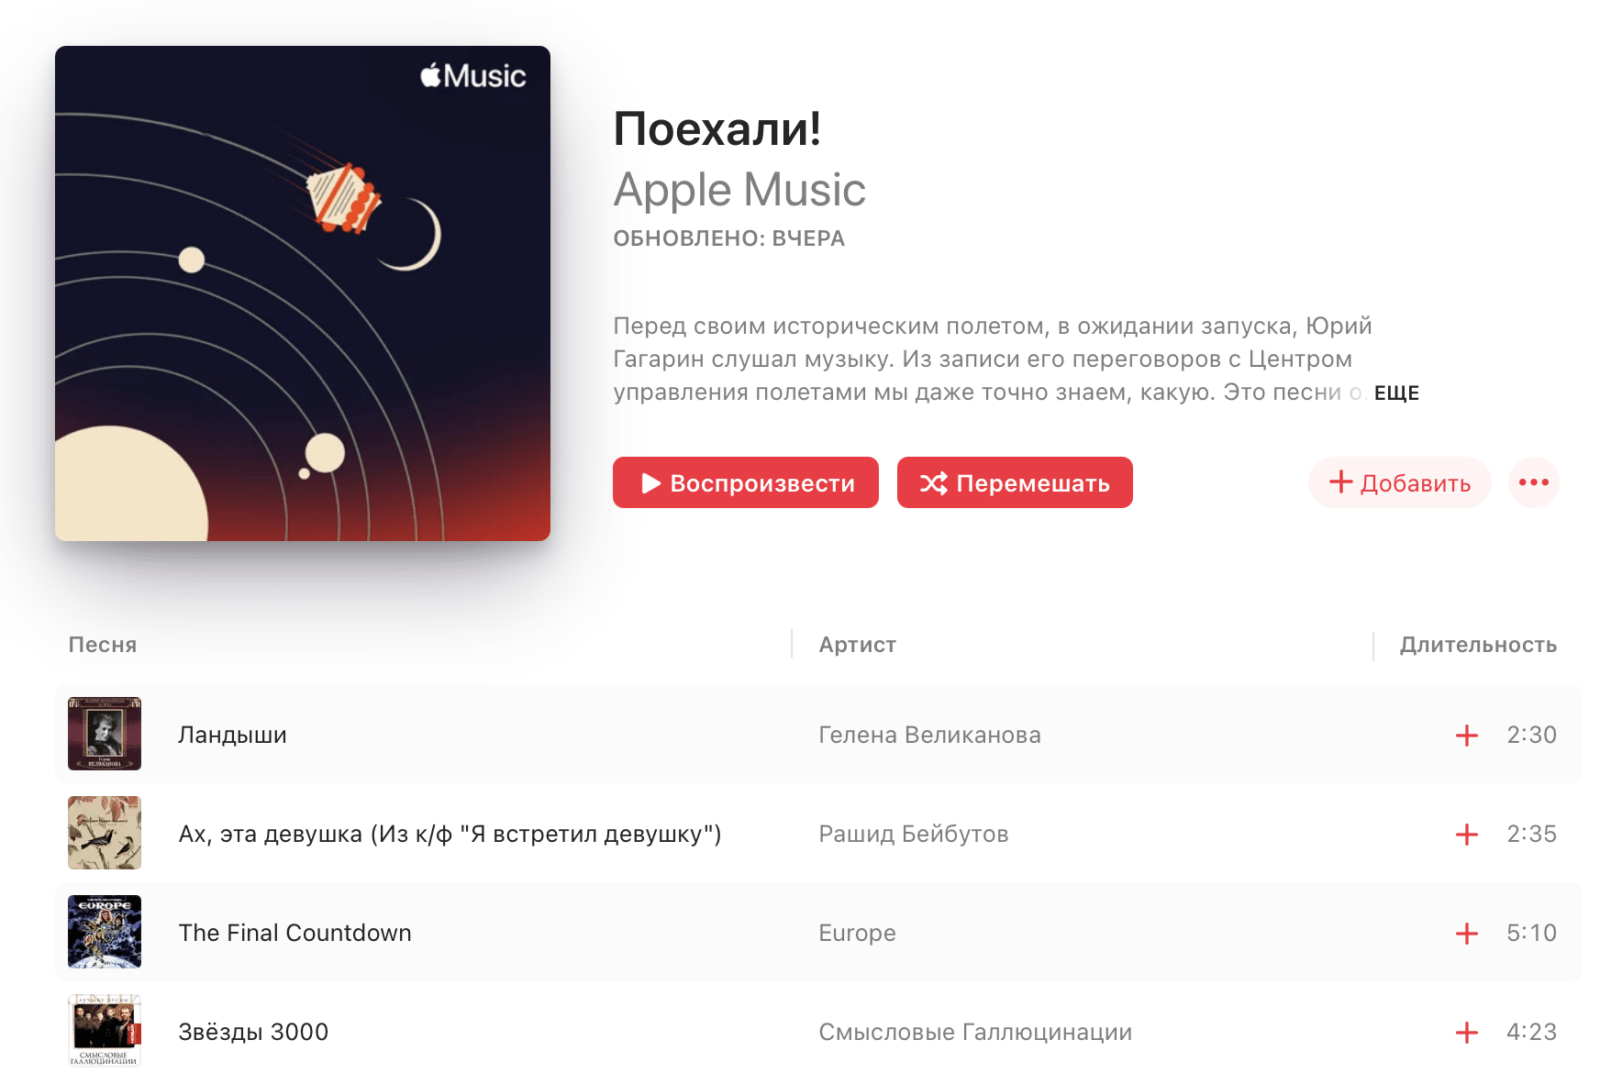 «Поехали!»: в Apple Music опубликован специальный плейлист Музея космонавтики в Москве (poehali)